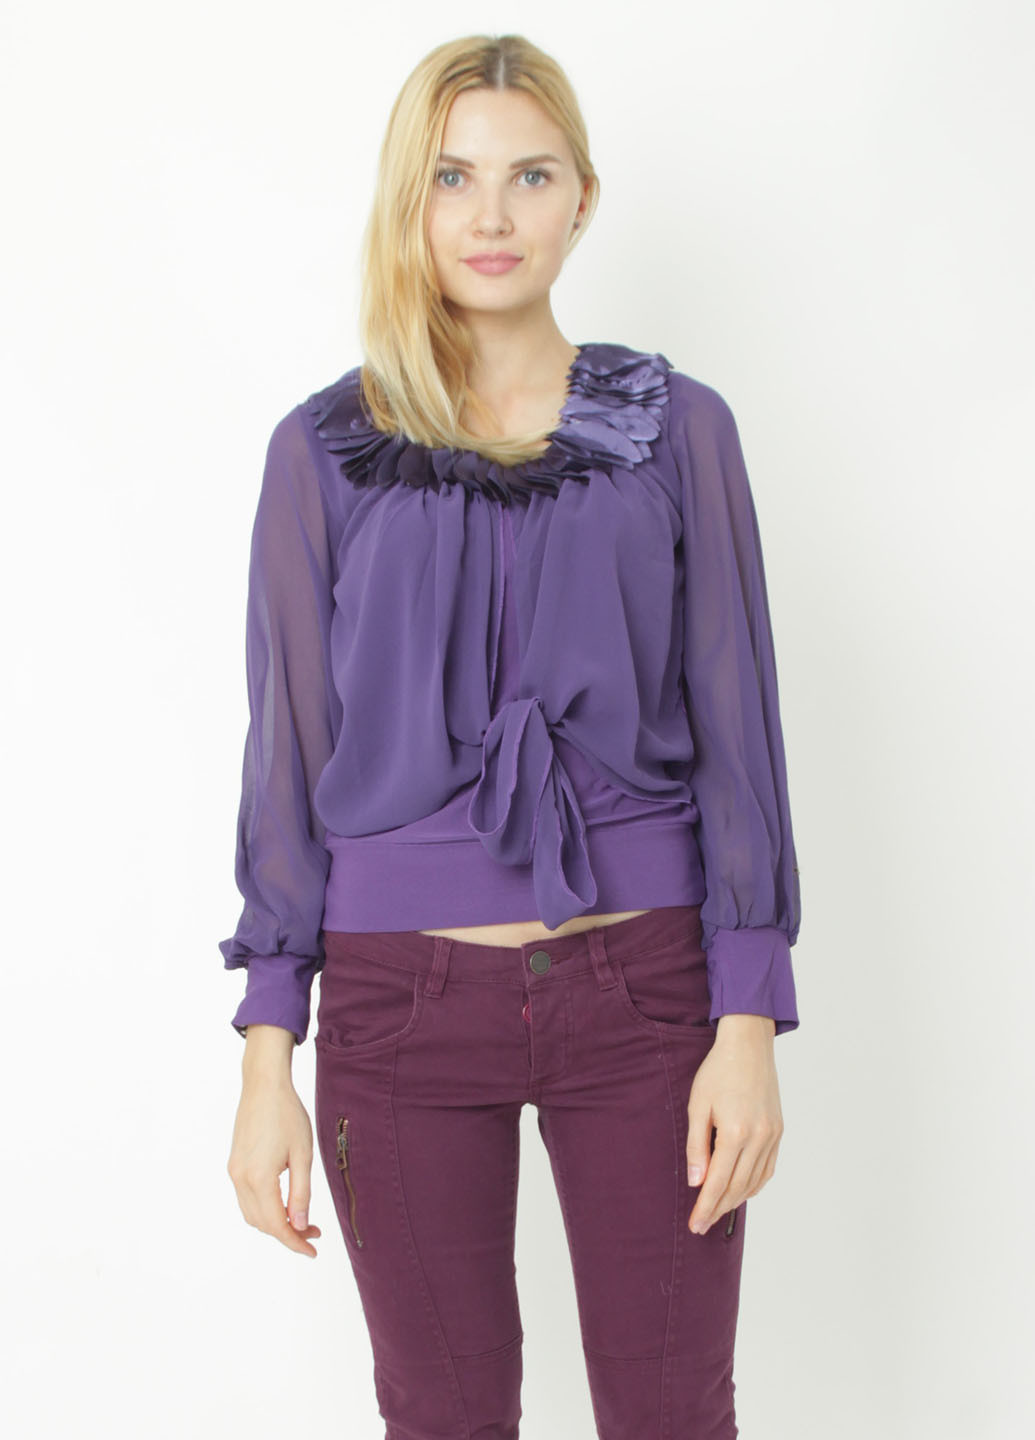 Фиолетовая демисезонная блуза Mtp